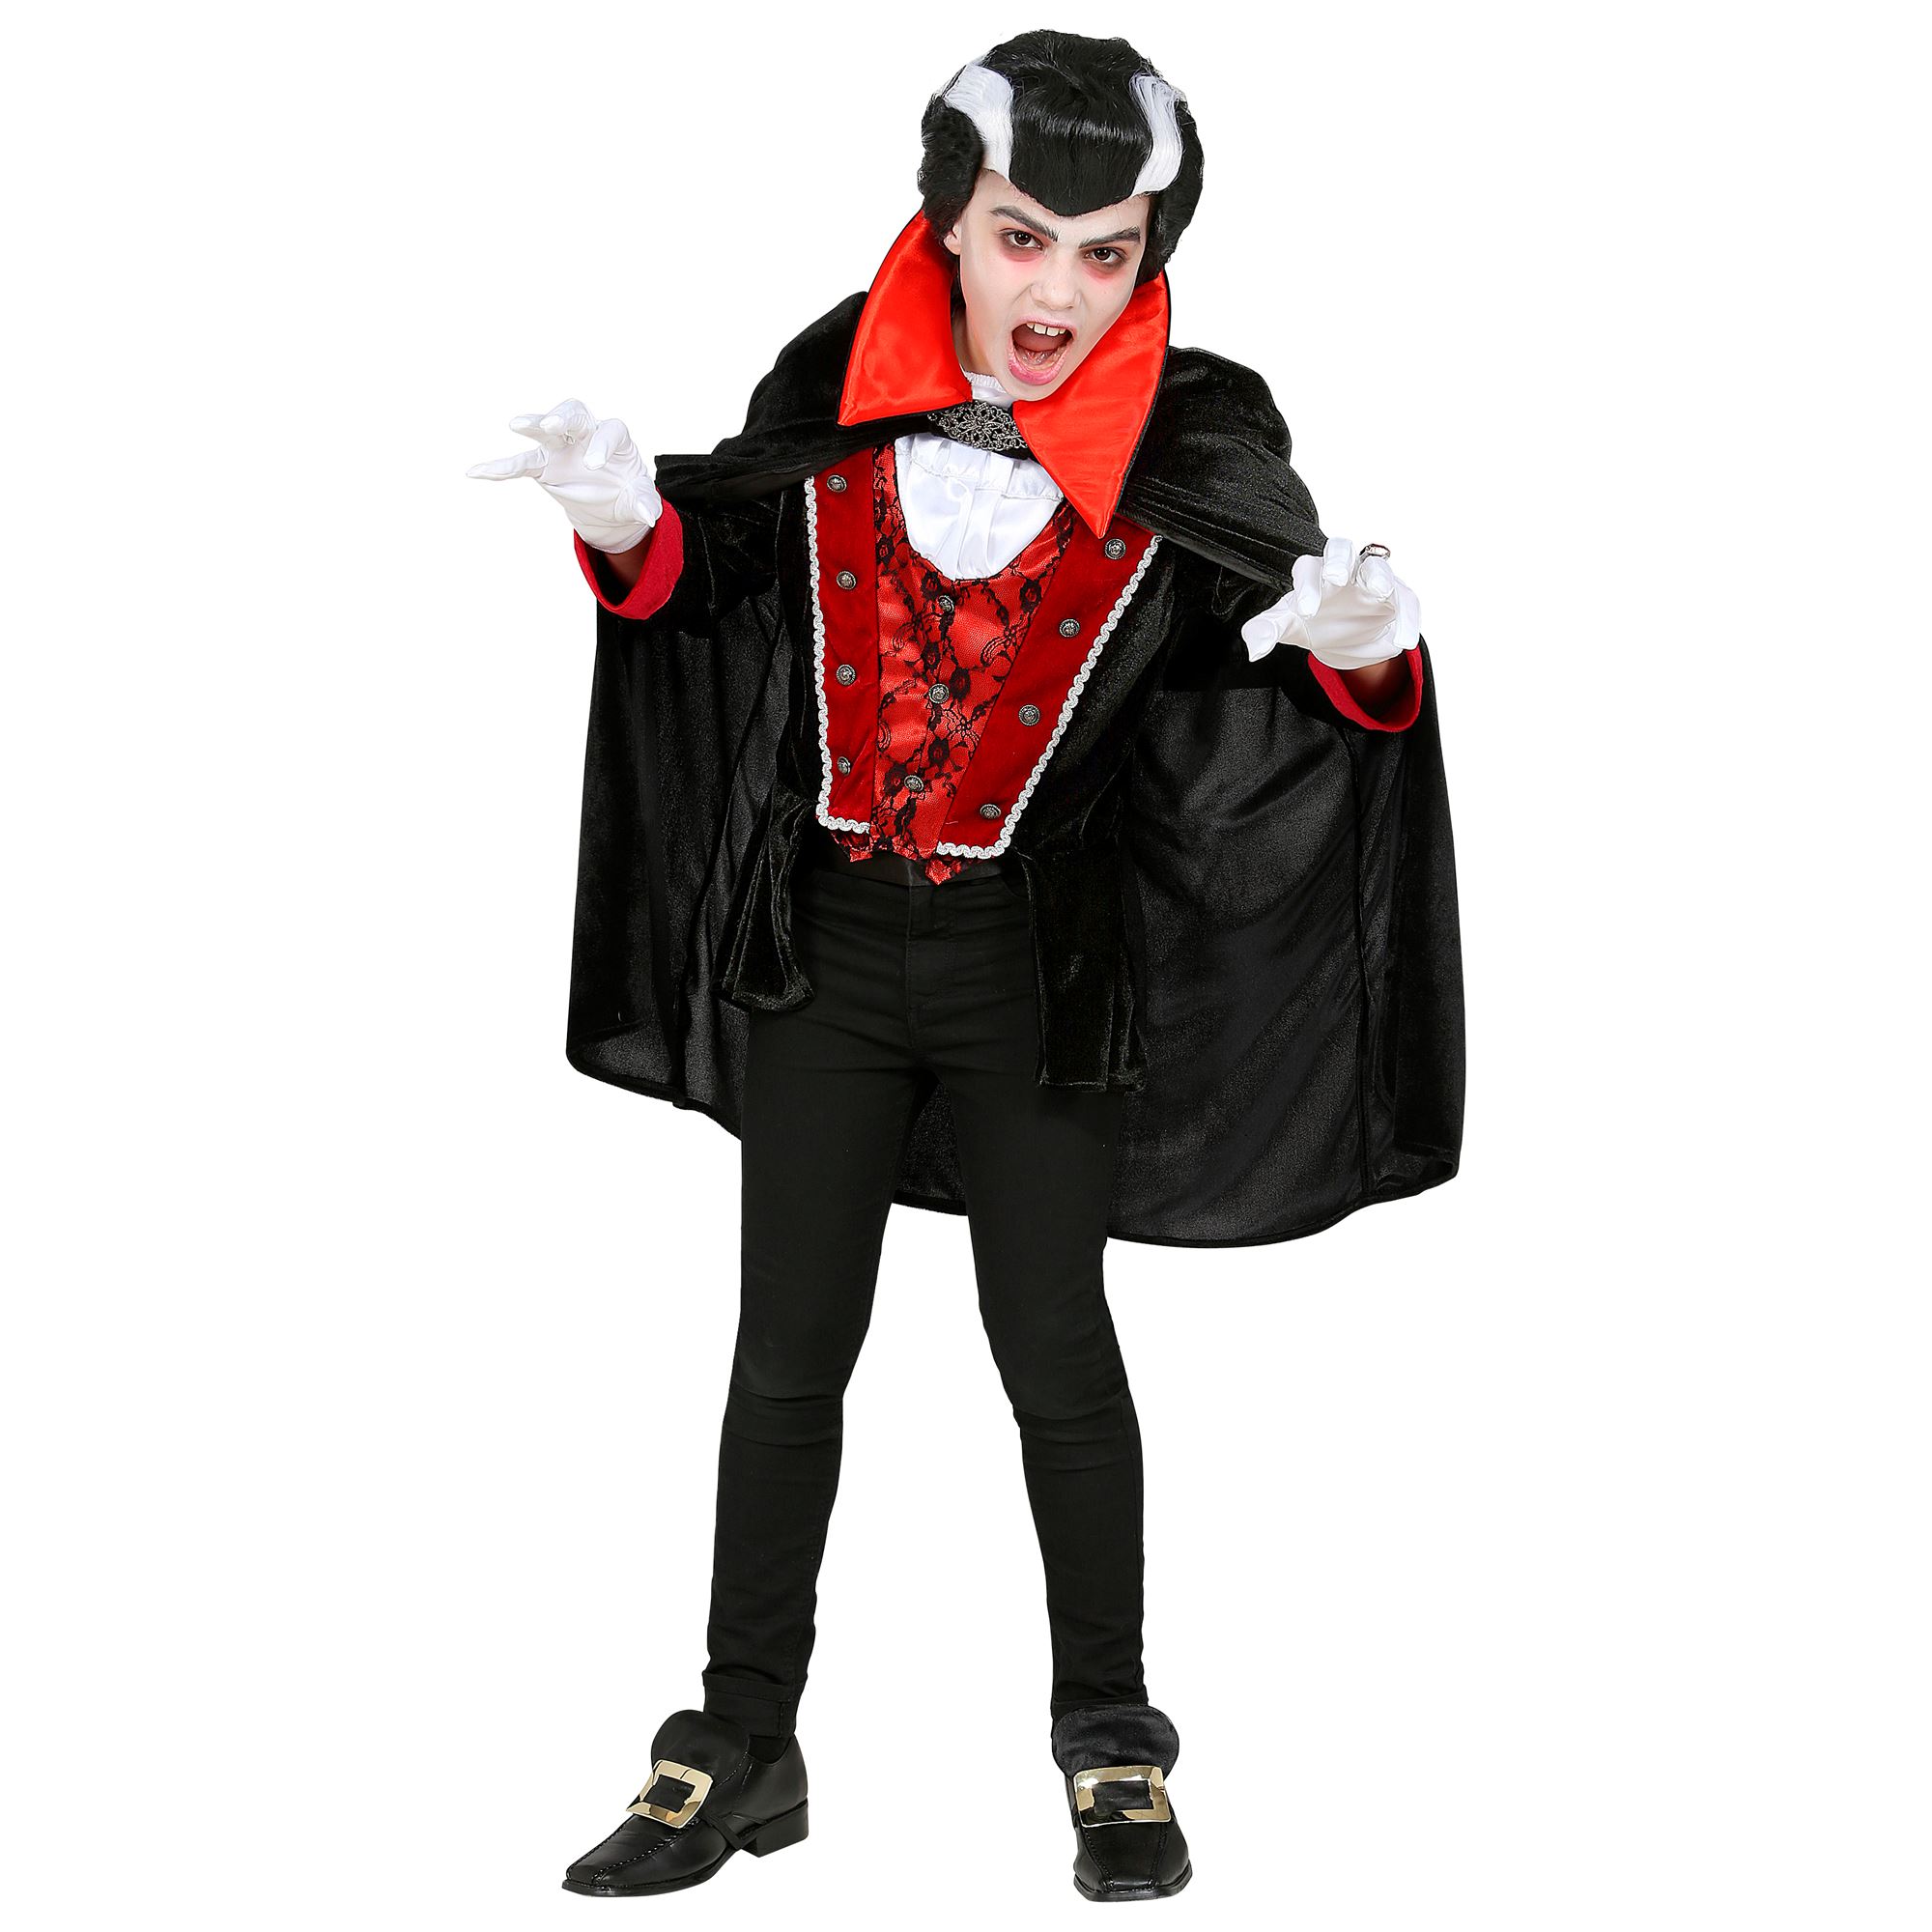 Vampirkostüm für Kinder, Dracula,Oberteil mit Weste, Jabot und Umhang, Halloween